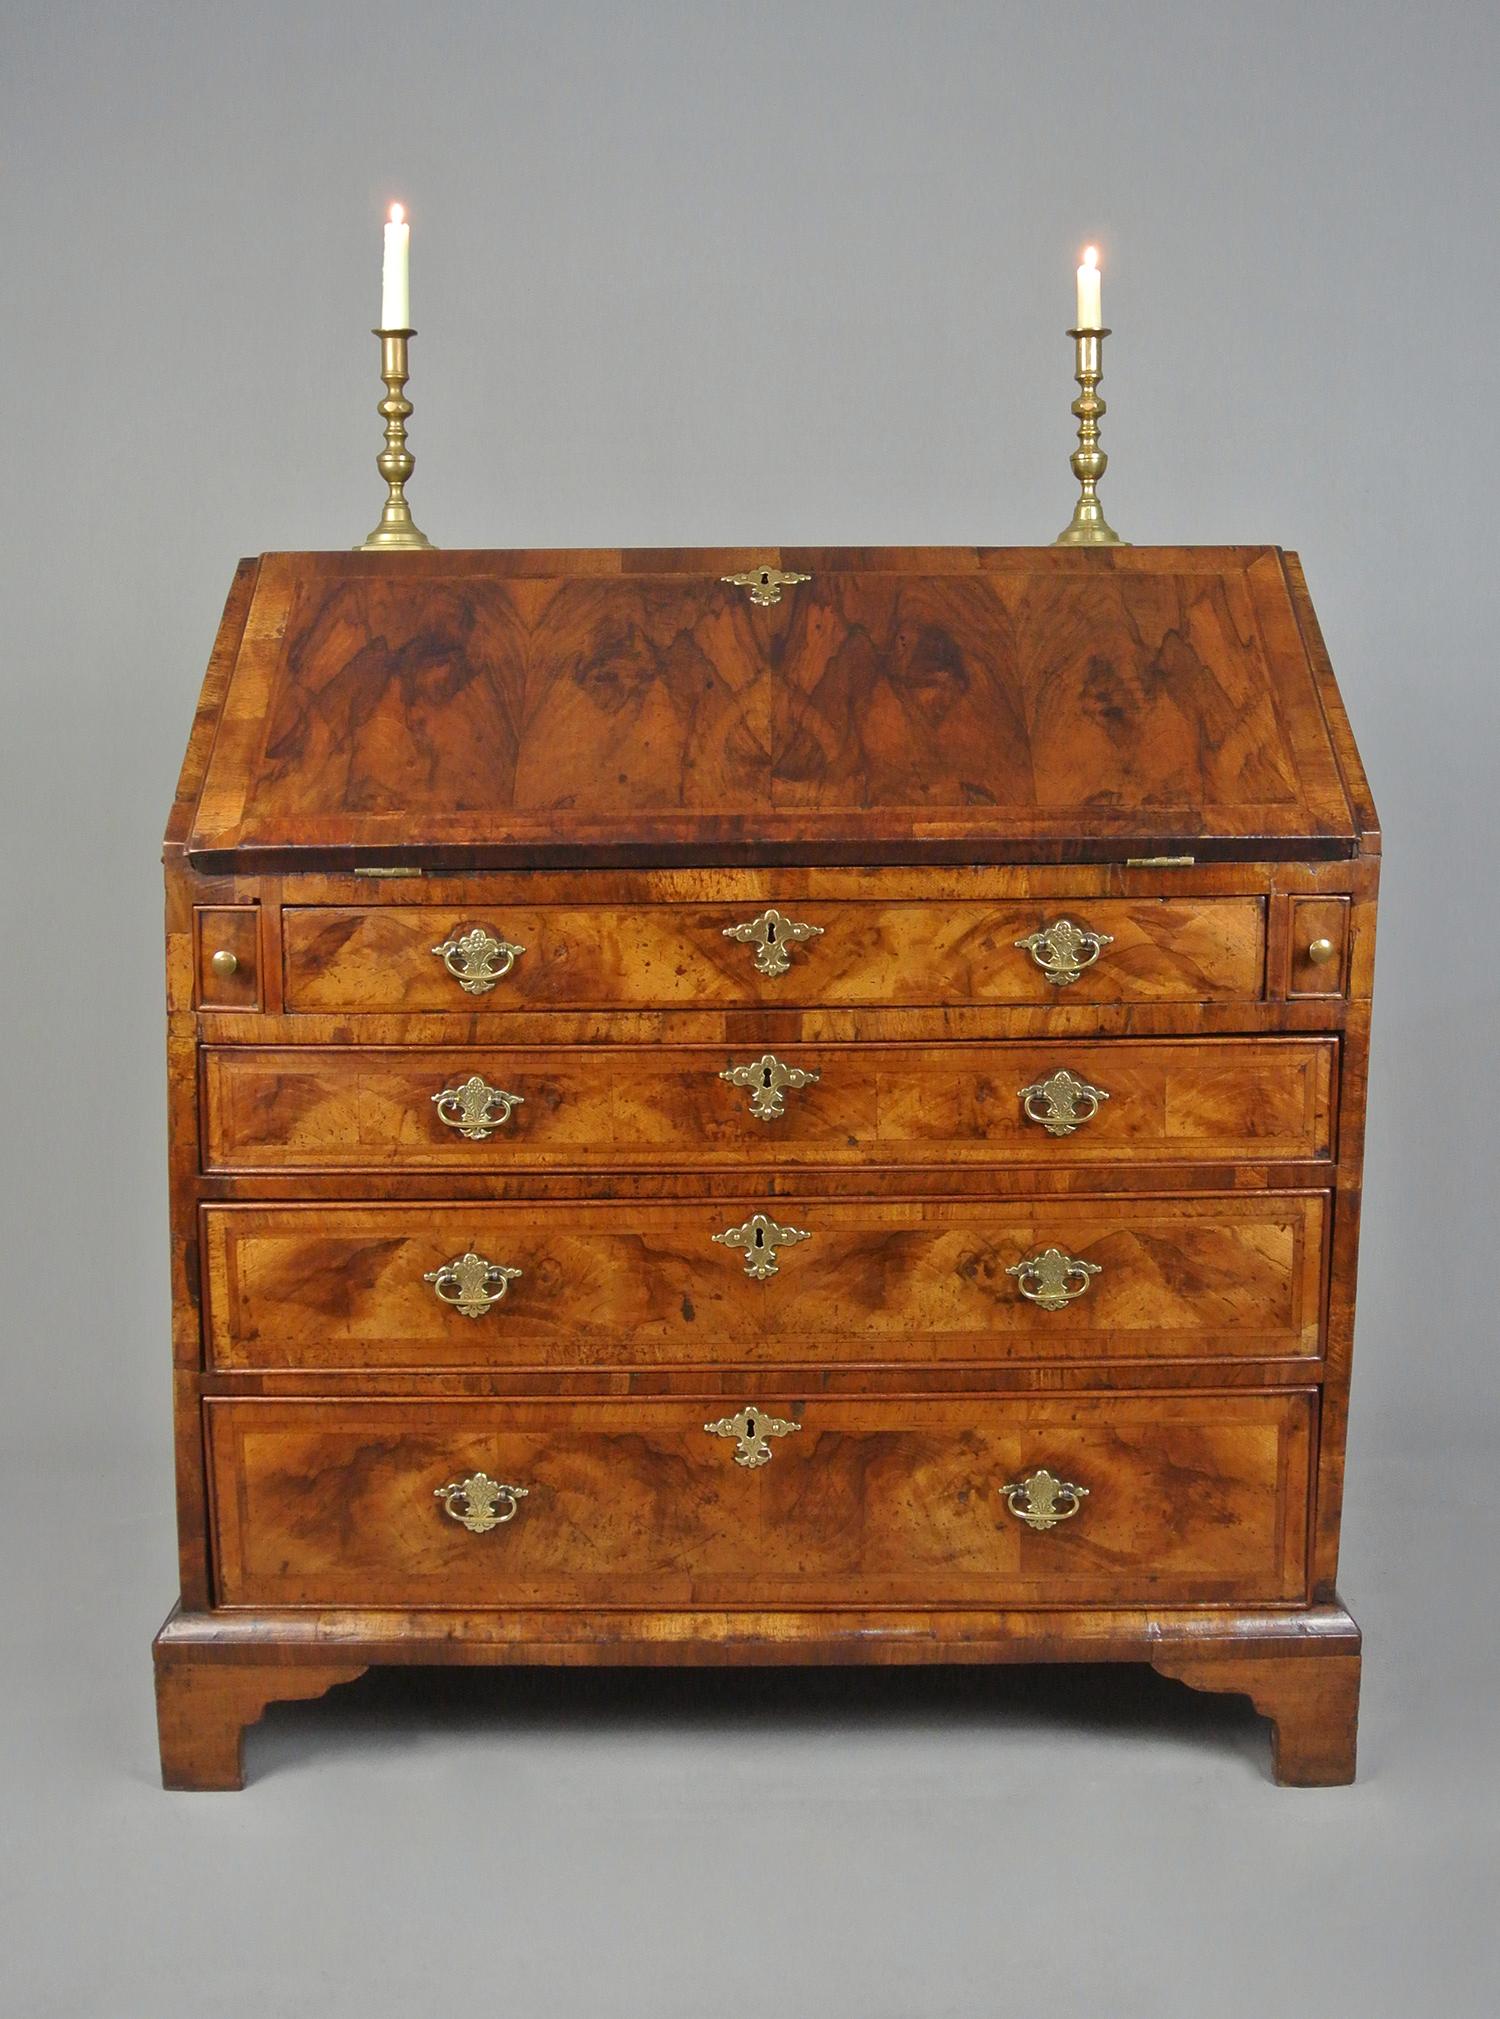 Diese schöne Kommode mit ihrer fantastischen Farbe und dem seltenen Eibenholz stammt aus der Regierungszeit von Georg II. um 1750.

Mit Eichenholz gefütterte Schubladen und ein schönes Interieur von kleinen Nussbaum Schubladen und Taube Löcher und